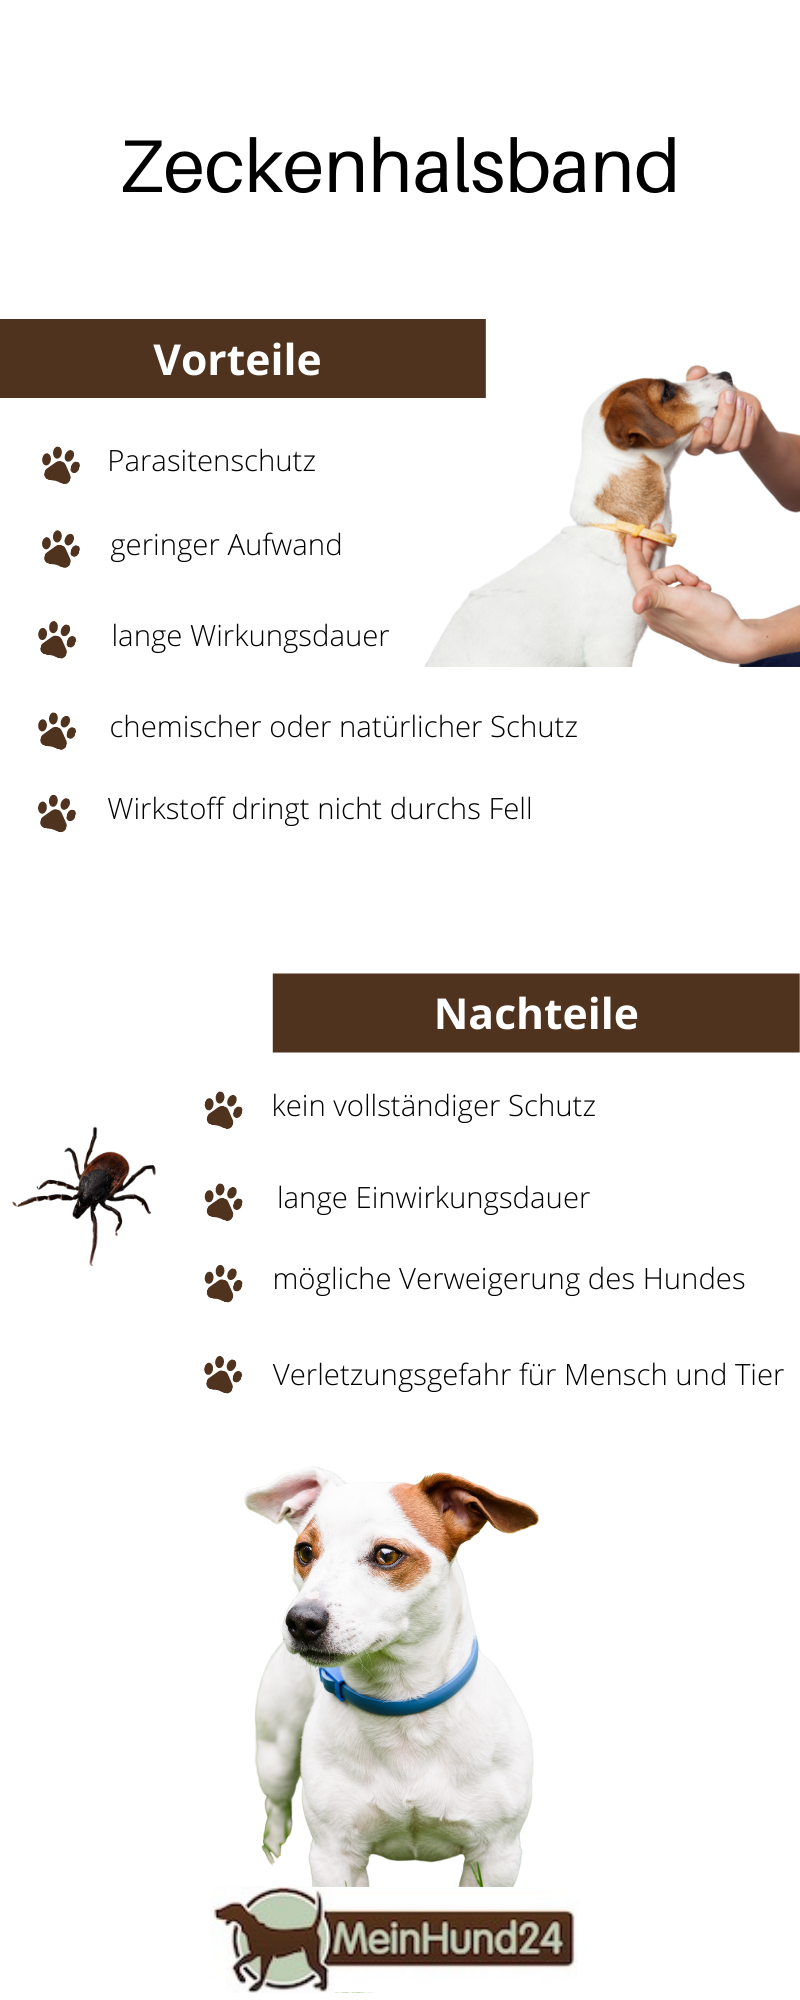 Vorteile und Nachteile von Zeckenhalsbändern für Hunde Infografik